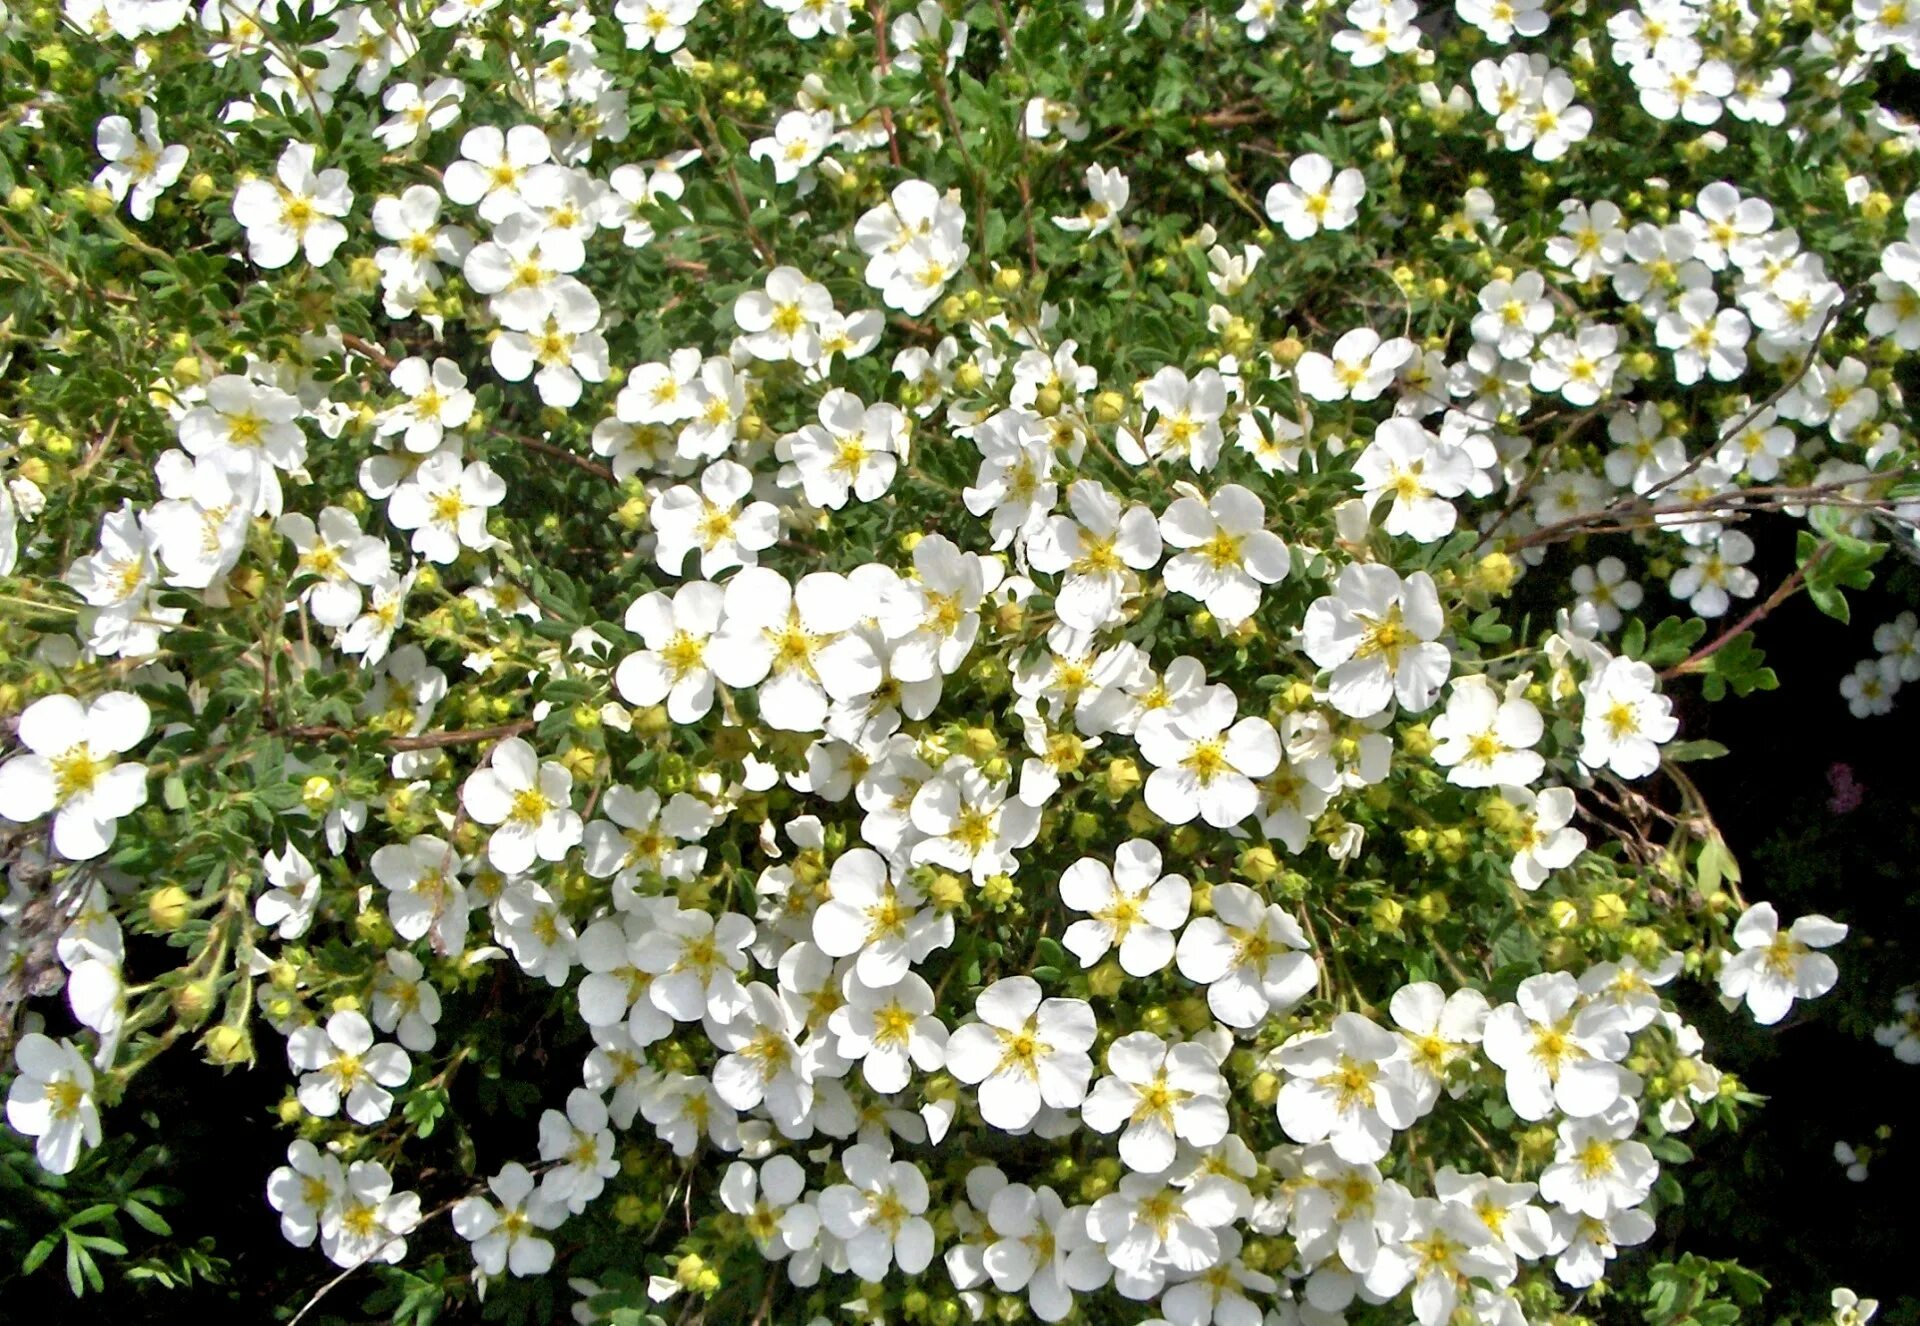 Название цветов мелкие белого цвета. Мелкие белые цветы. Маленькие белые цветочки. Цветок с маленькими белыми цветочками. Растение с мелкими белыми цветами.